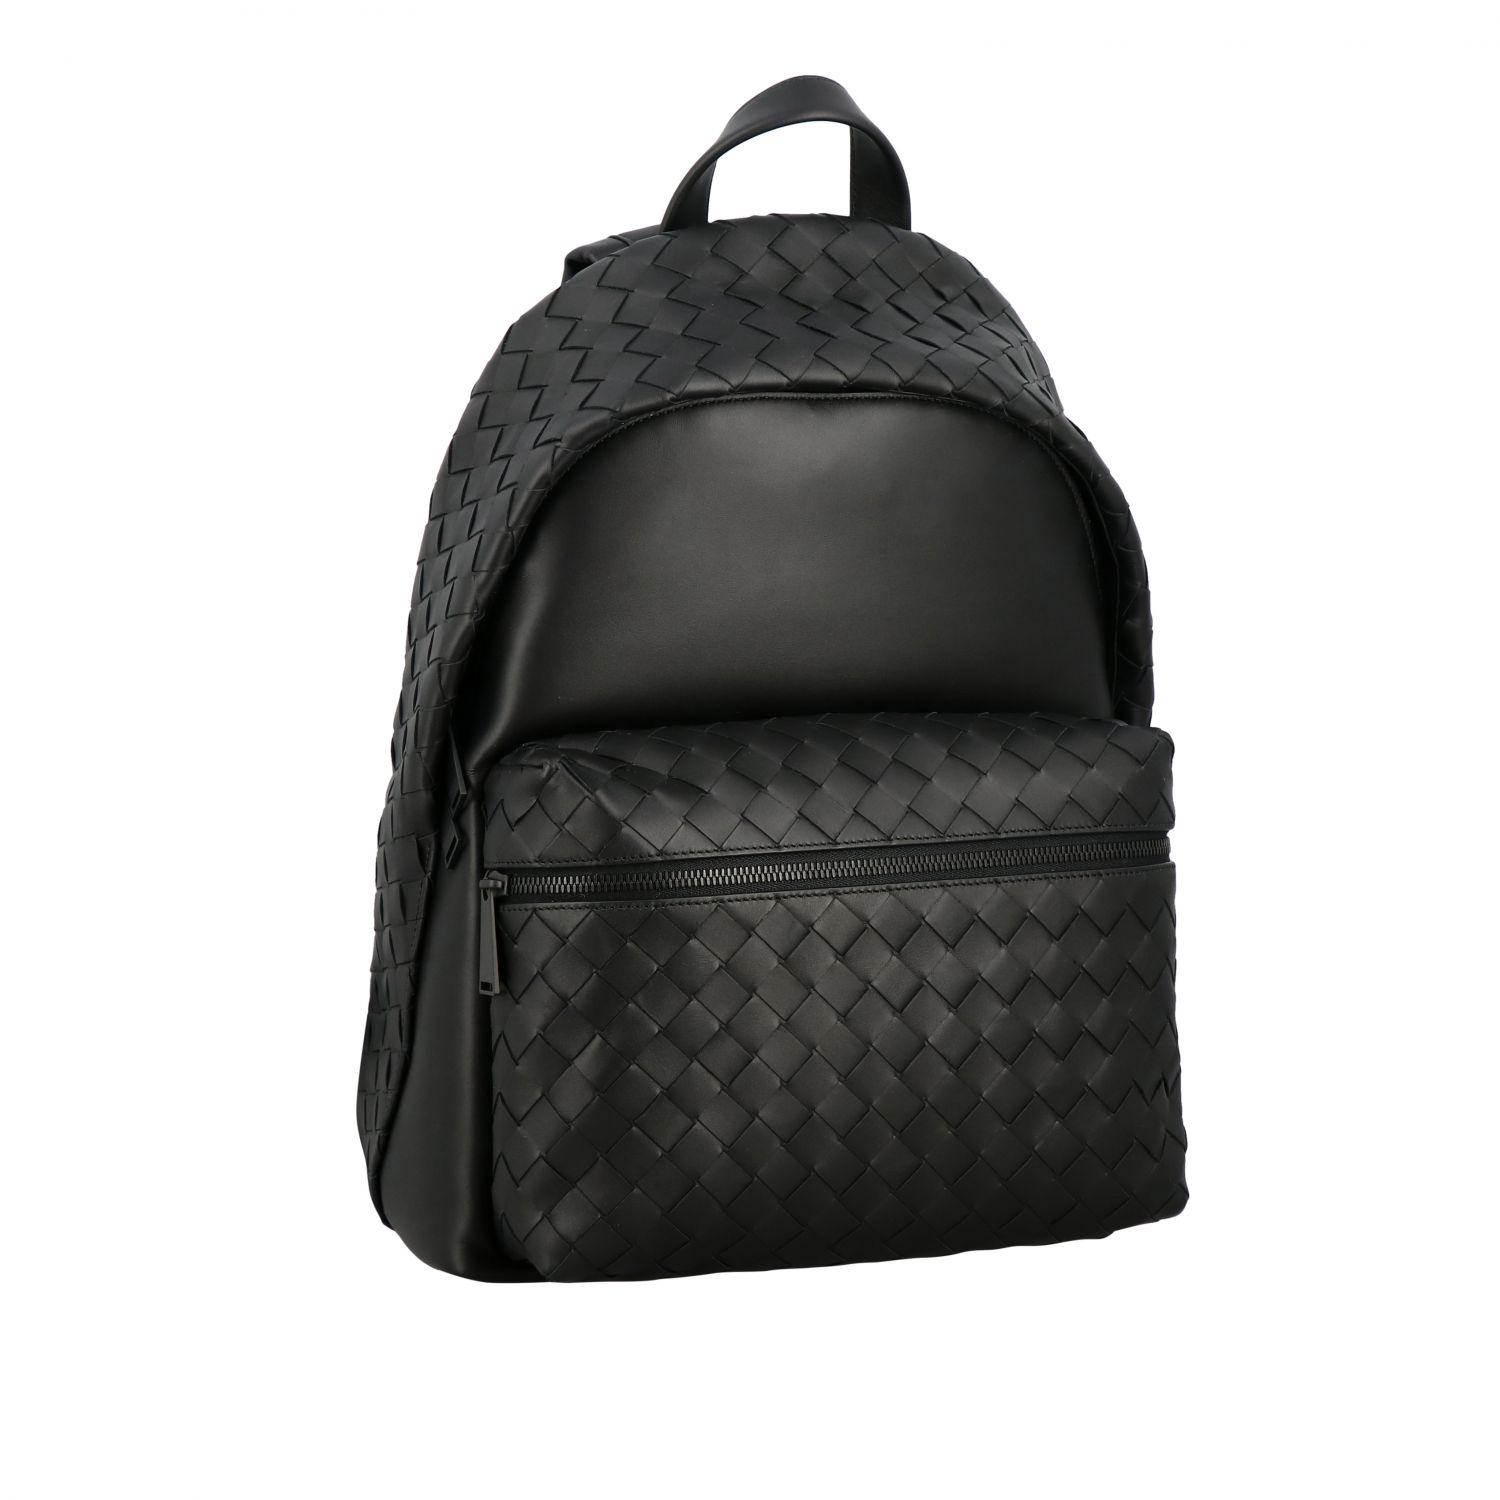 BOTTEGA VENETA: backpack in woven nappa leather - Black | Backpack ...